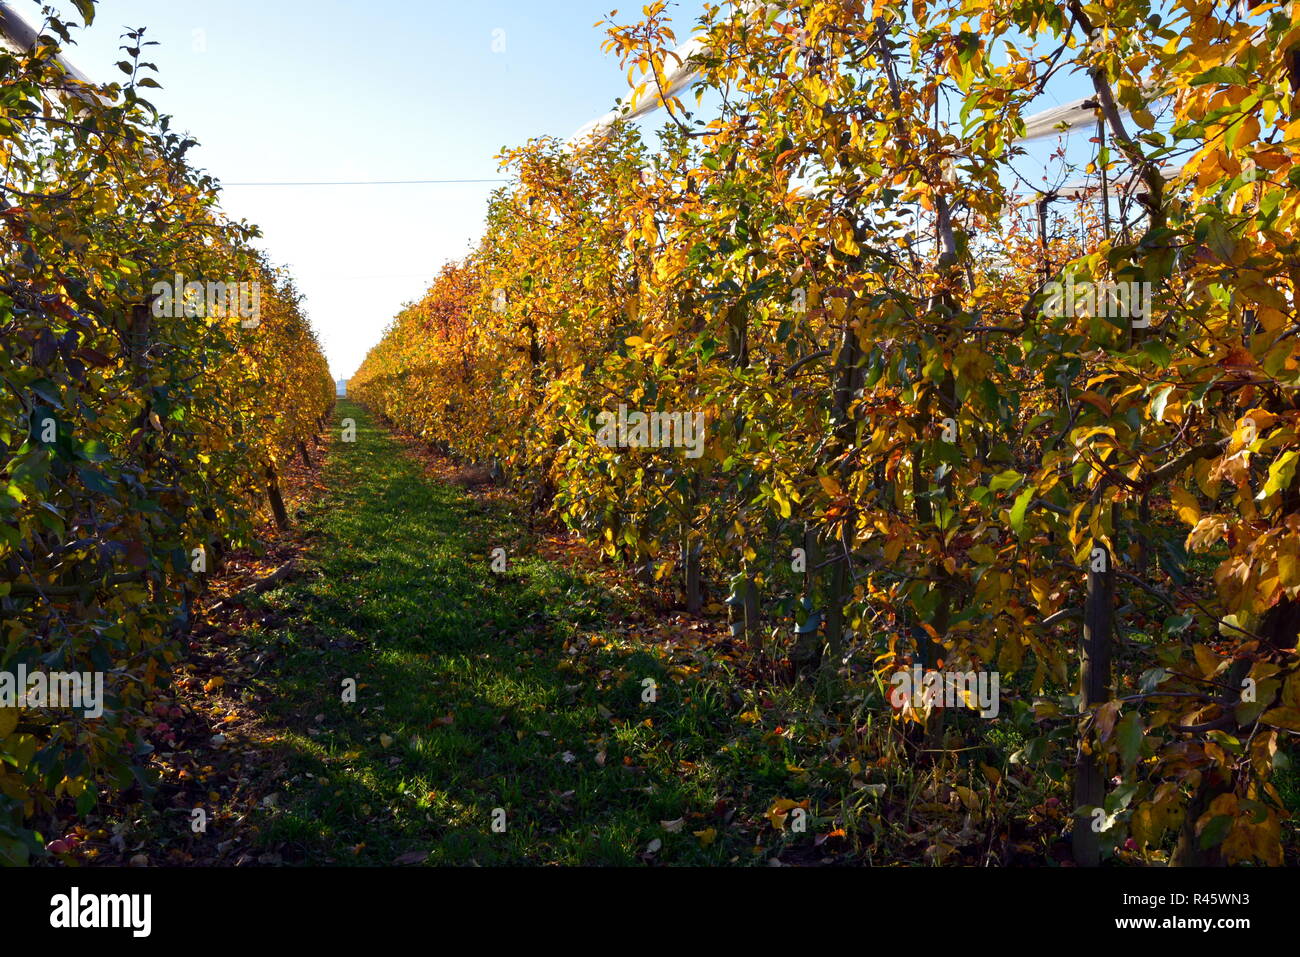 apple tree plantation in autumn Stock Photo